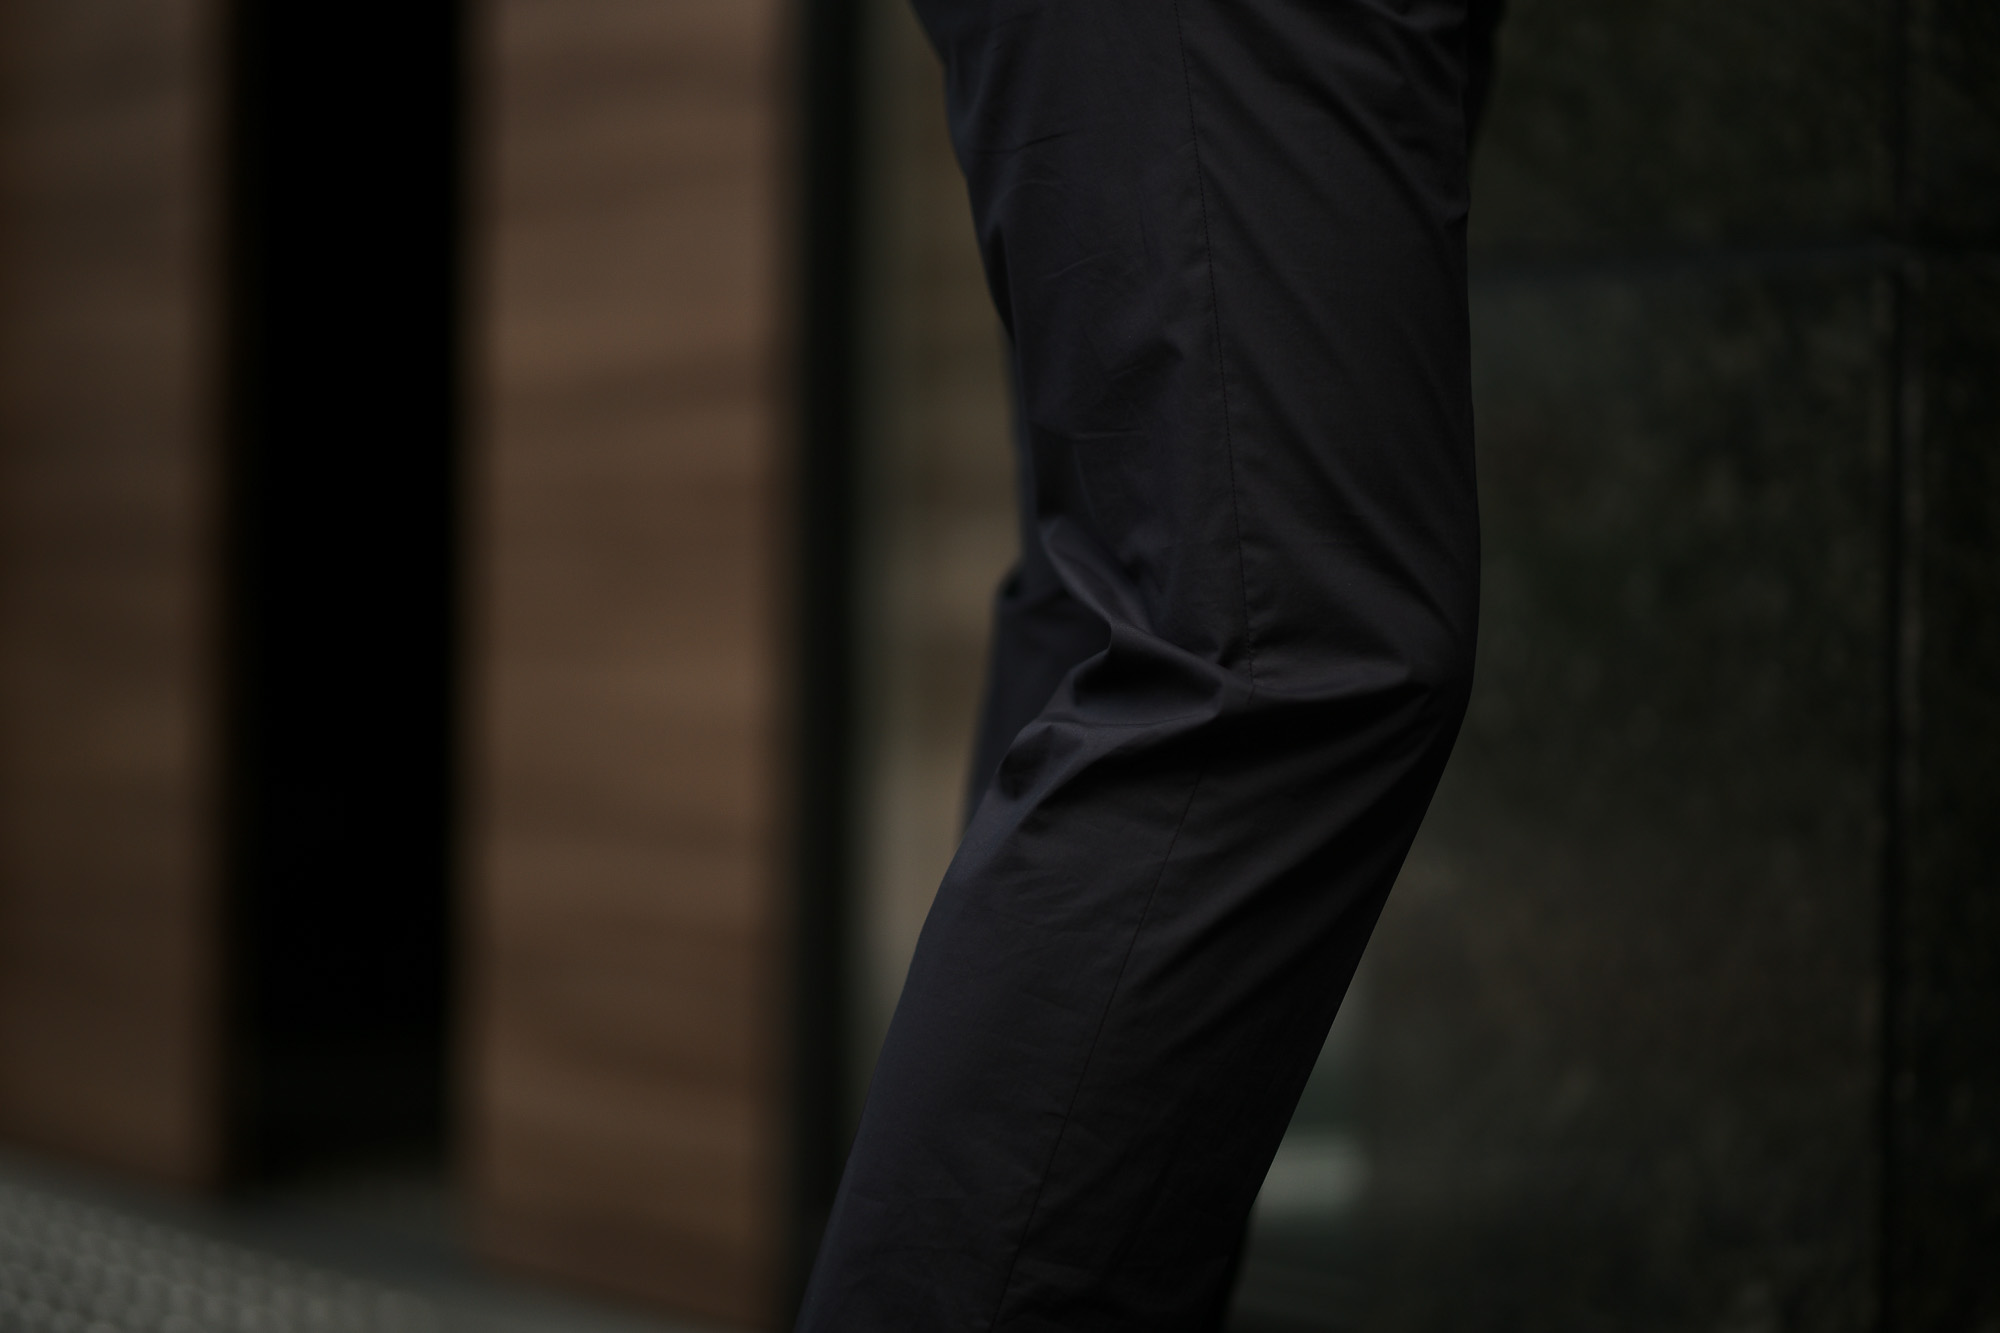 LARDINI (ラルディーニ) EASY WEAR (イージーウエア) Cotton Suit (コットン スーツ) コットン ストレッチ ポプリン スーツ NAVY (ネイビー・4) made in italy (イタリア製) 2019 春夏新作 愛知 名古屋 altoediritto アルトエデリット